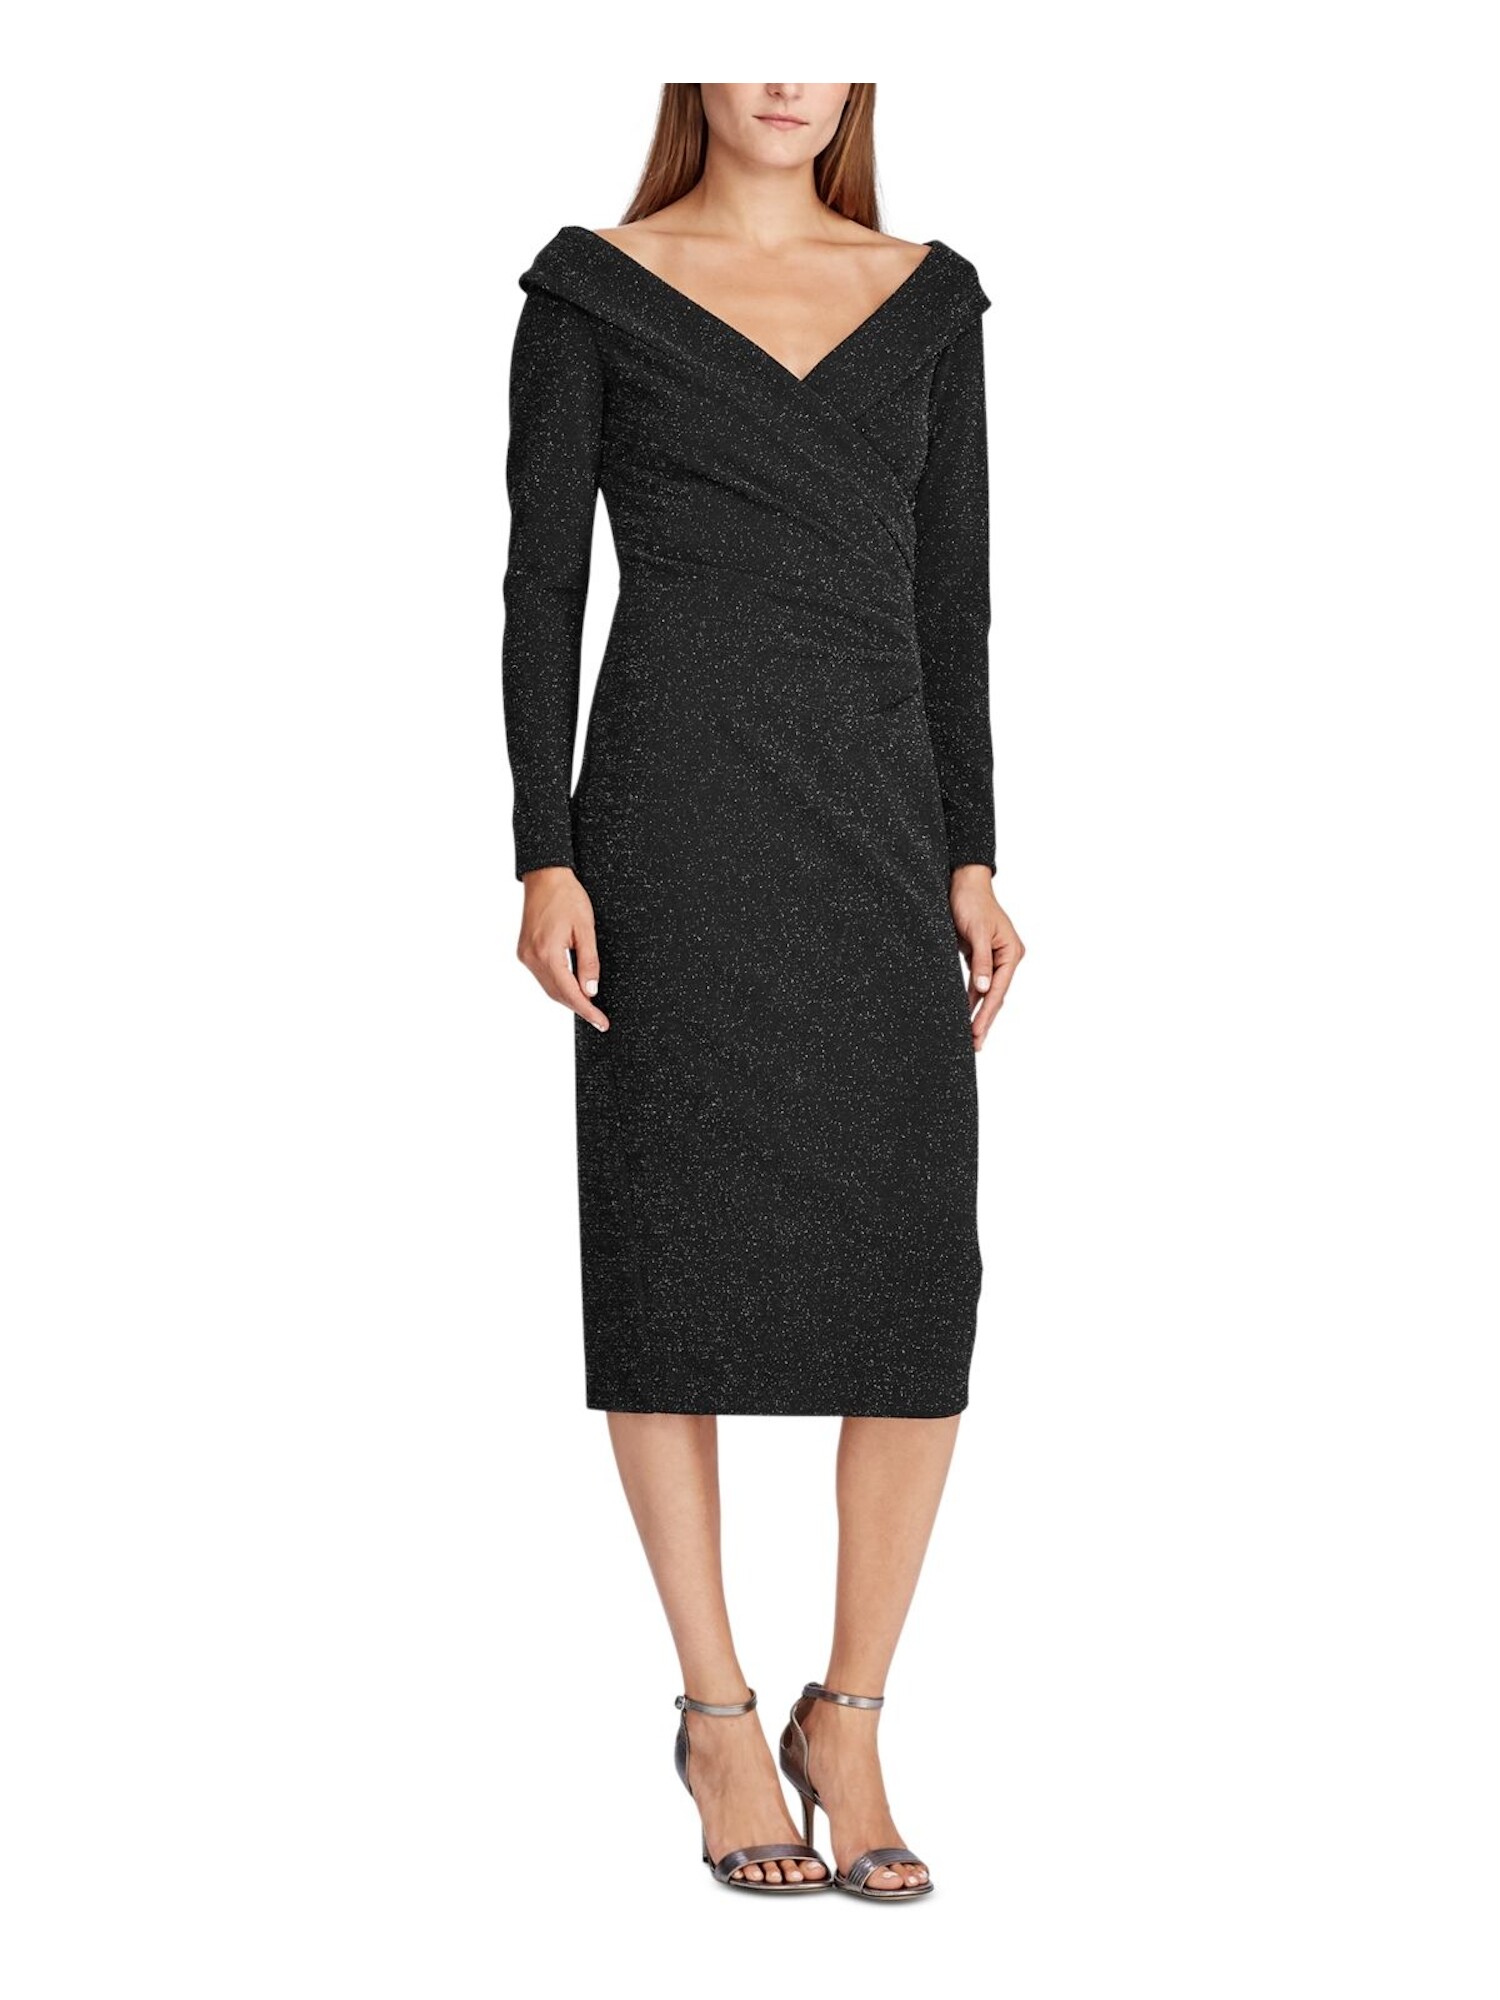 Ralph Lauren Women's 3/4 Sleeve Evening Dress Black Size 4 Petite